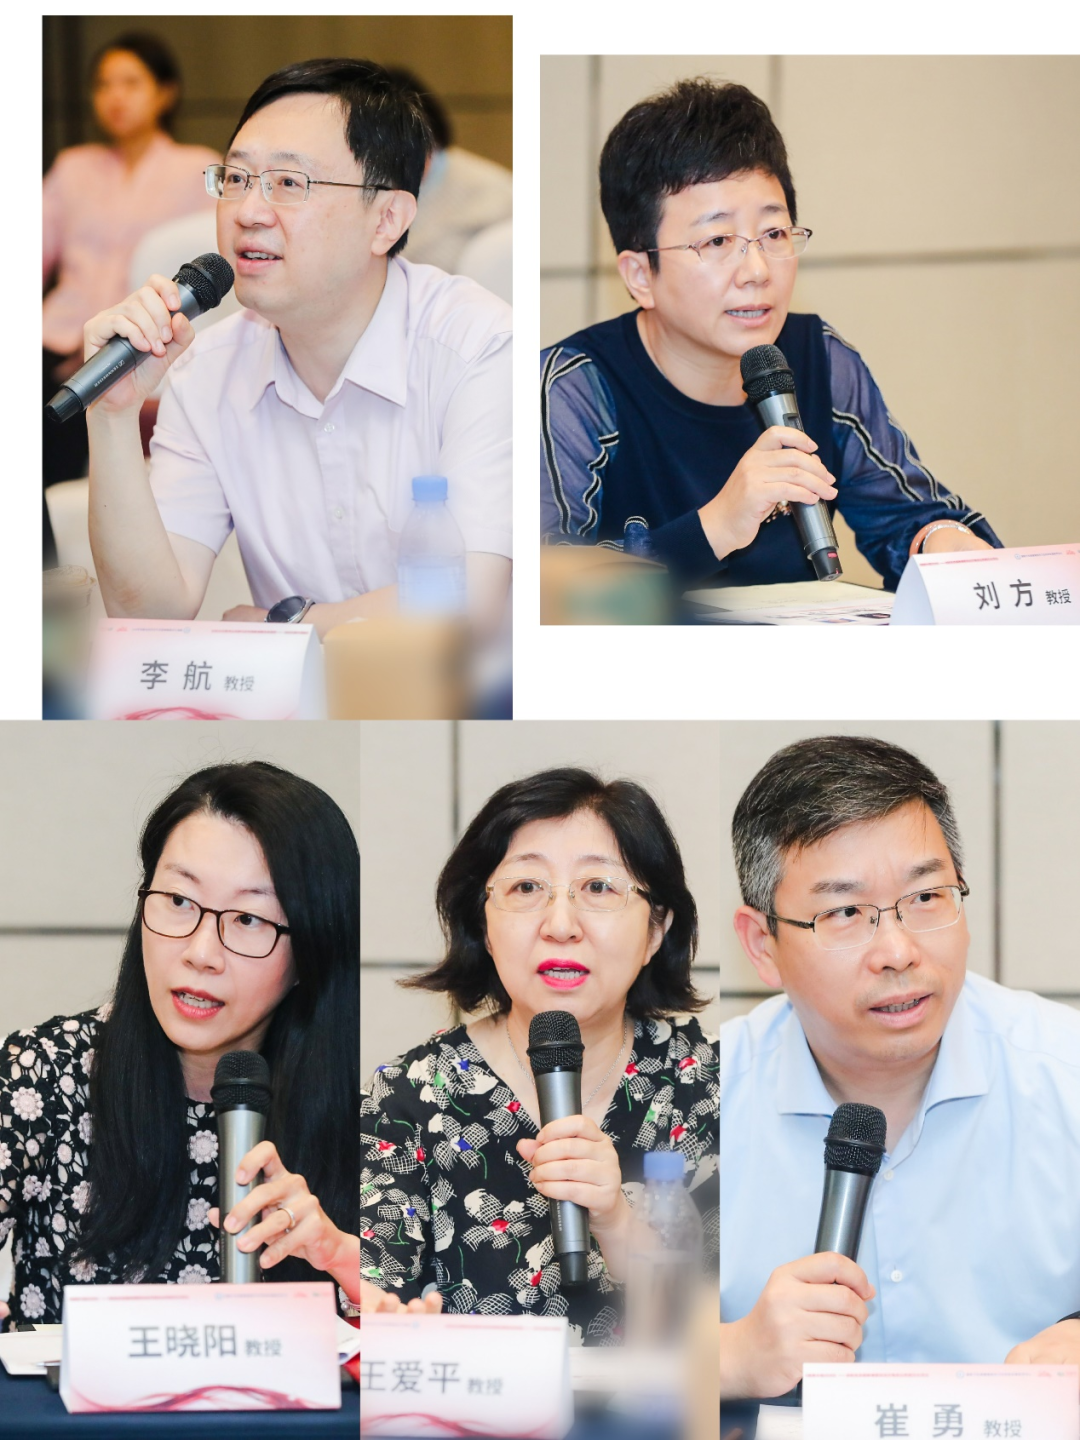 《健康中国2030》“皮肤免疫和肿瘤靶向治疗临床应用规范化”项目 启动暨专家研讨会（皮肤免疫方向）在京顺利召开